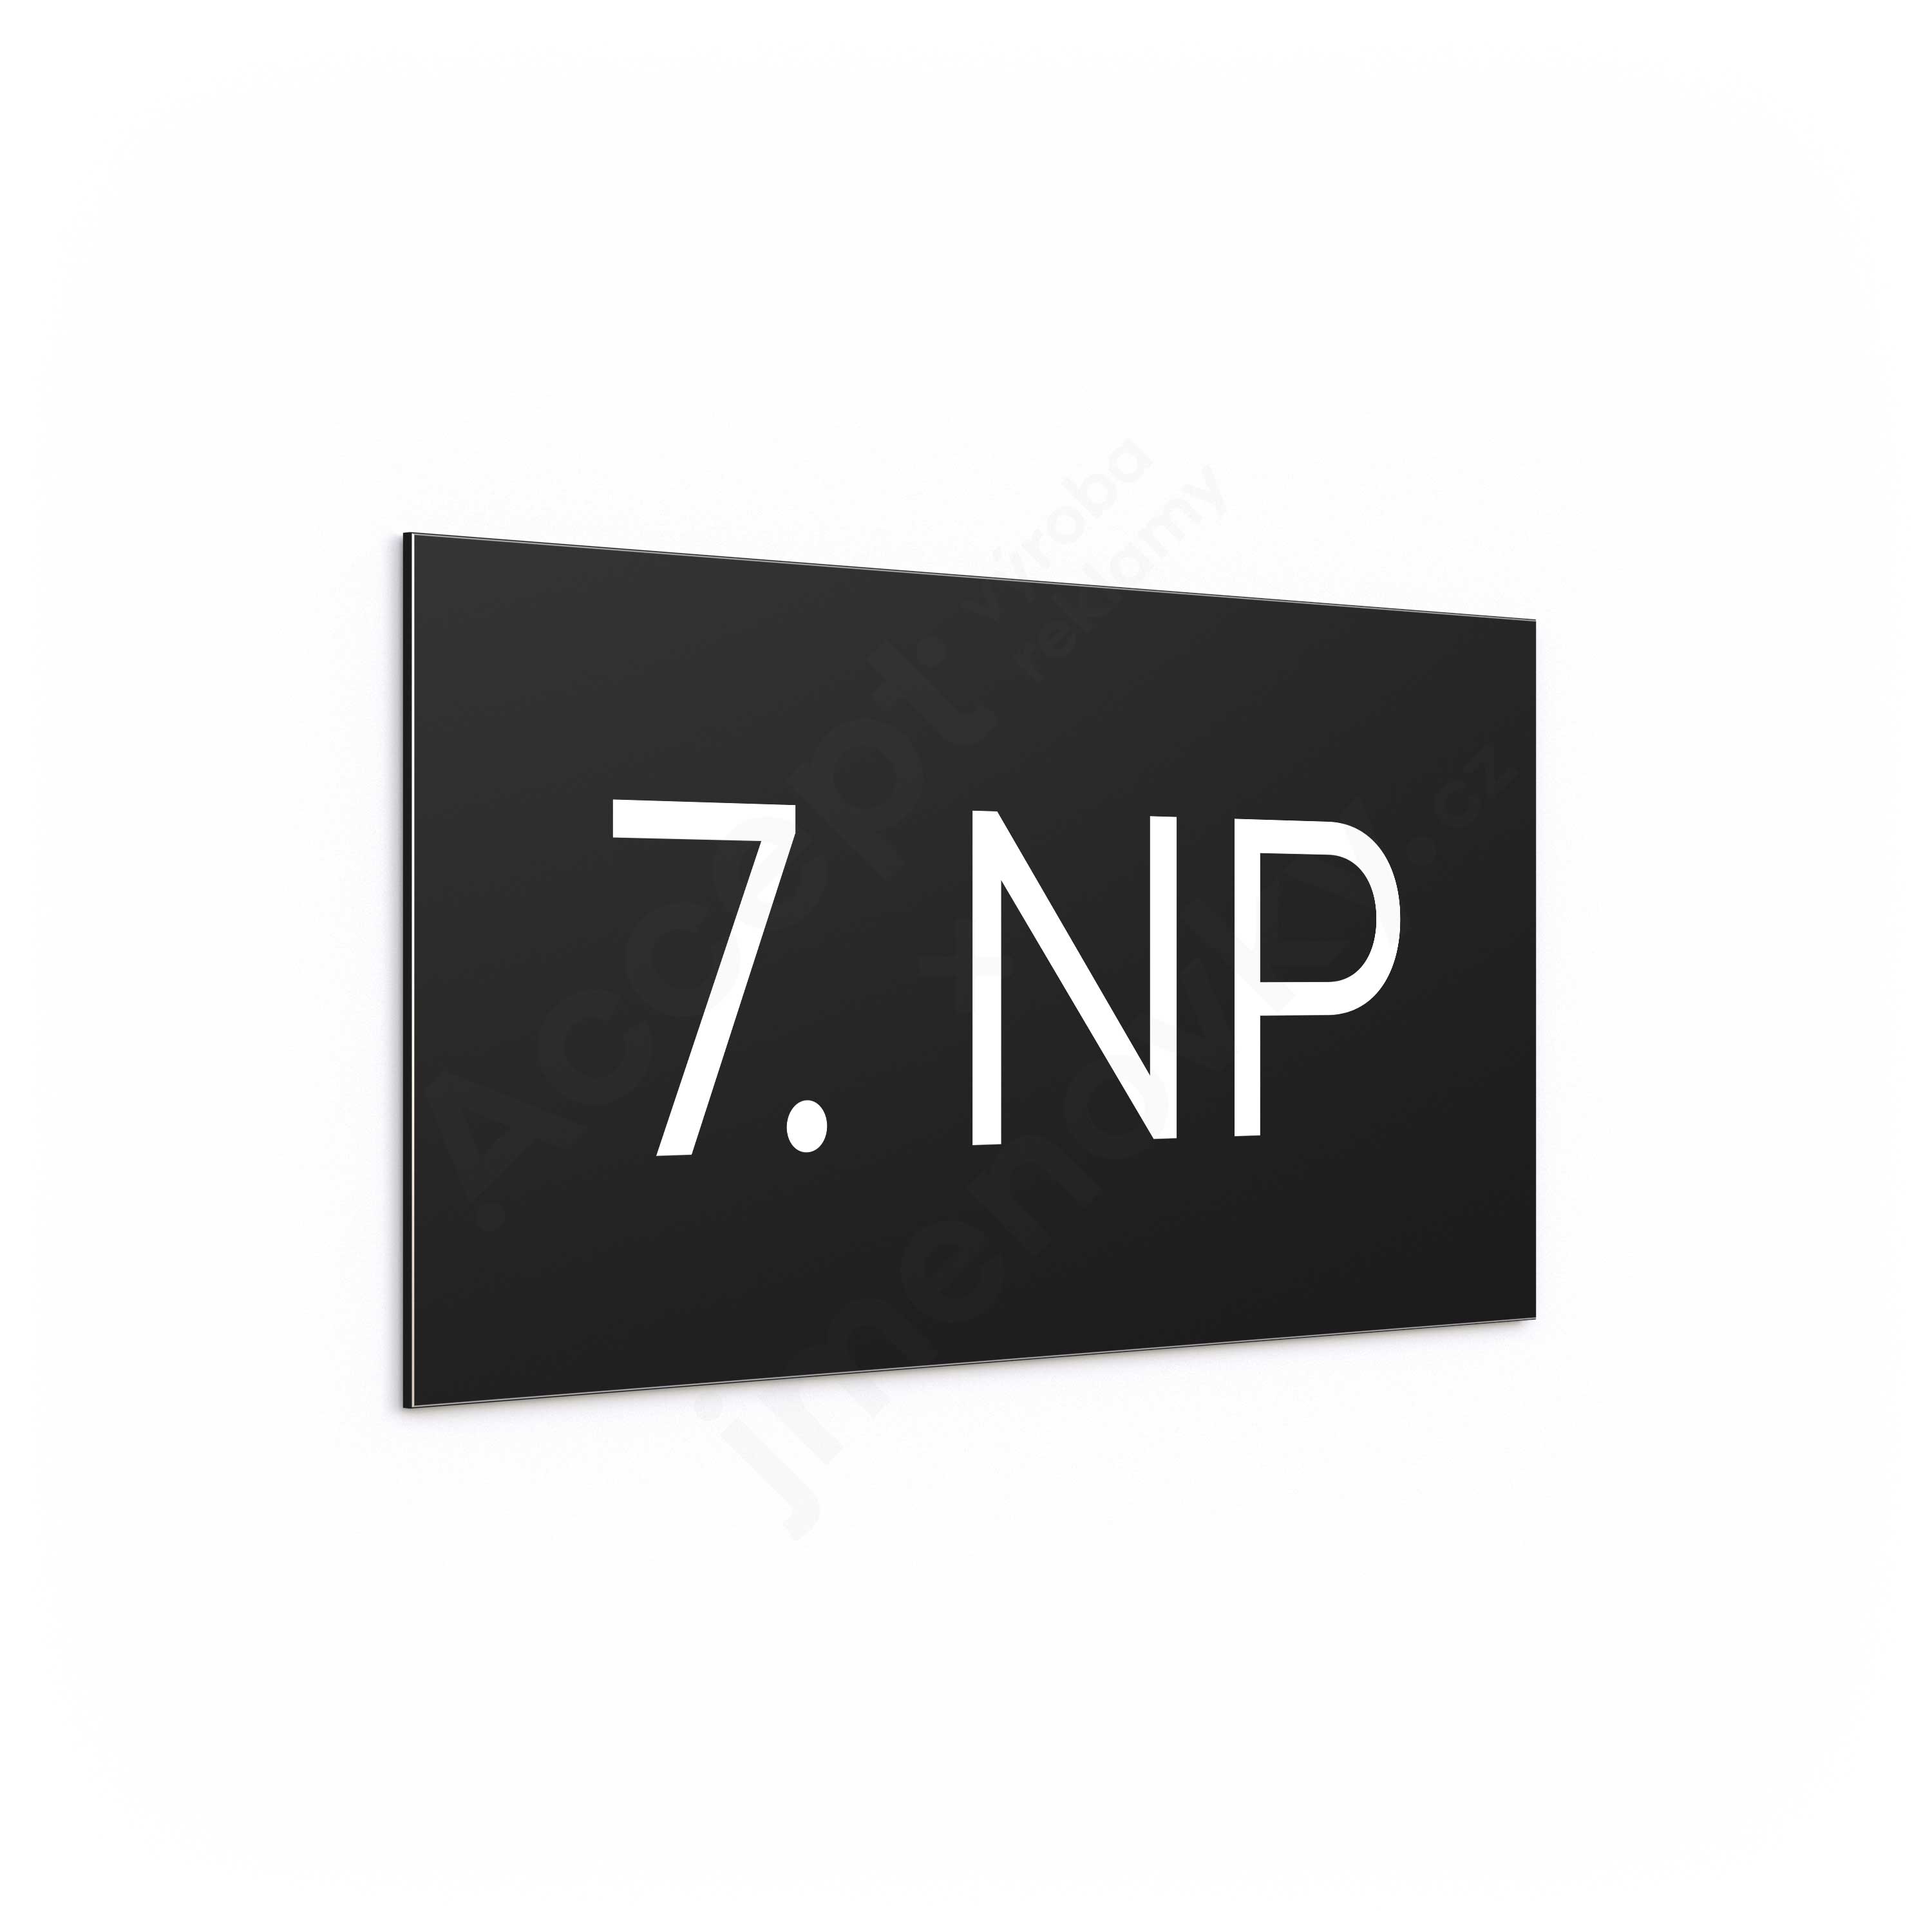 Označení podlaží "7. NP" - černá tabulka - bílý popis